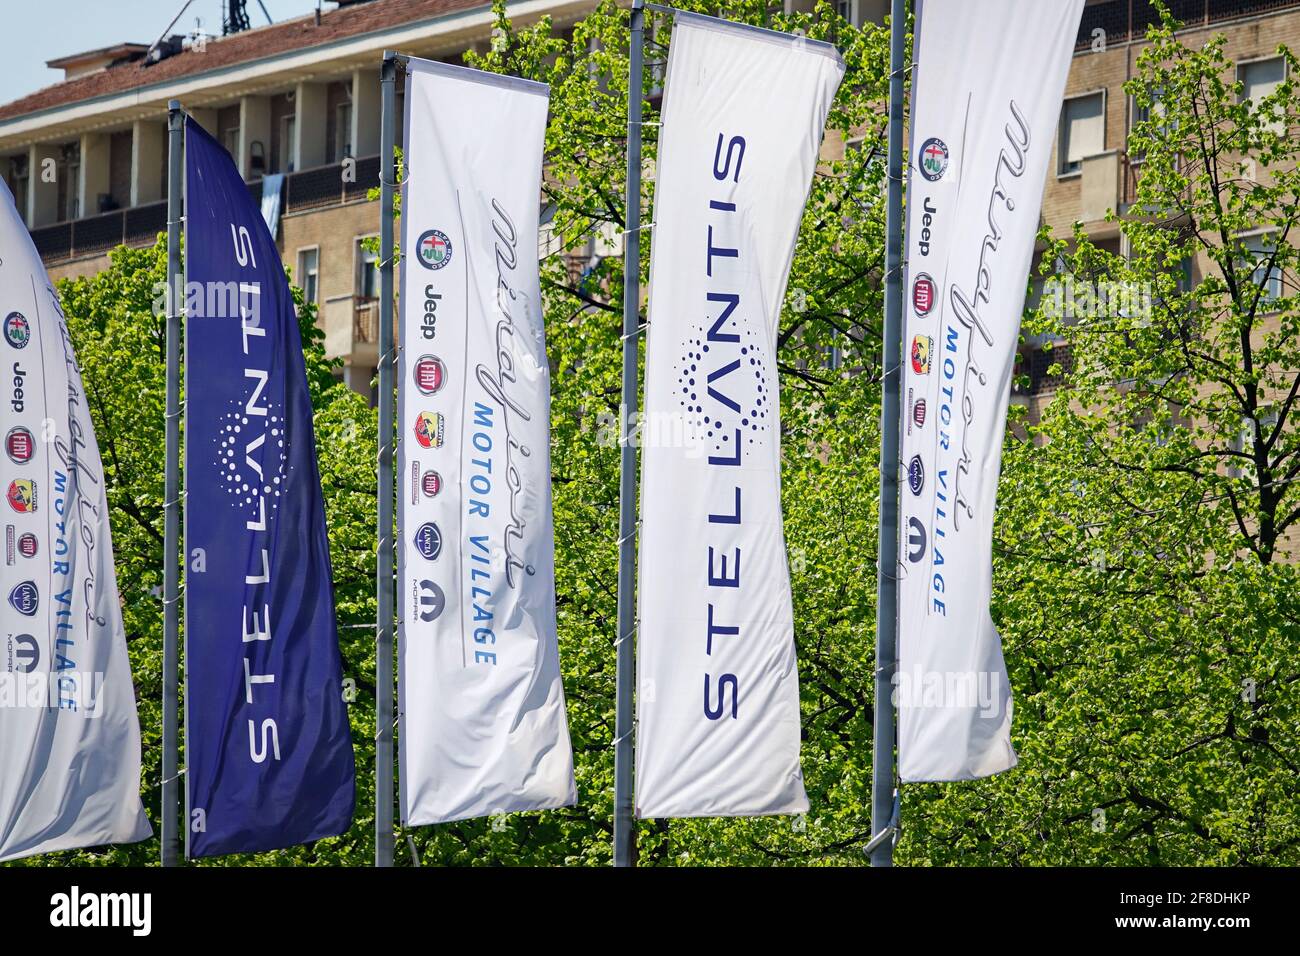 Le logo Stellantis et les nouveaux drapeaux sont installés à Mirafiori. Stellantis a été créé à partir de la fusion de Fiat Chrysler automobiles et PSA industri Banque D'Images